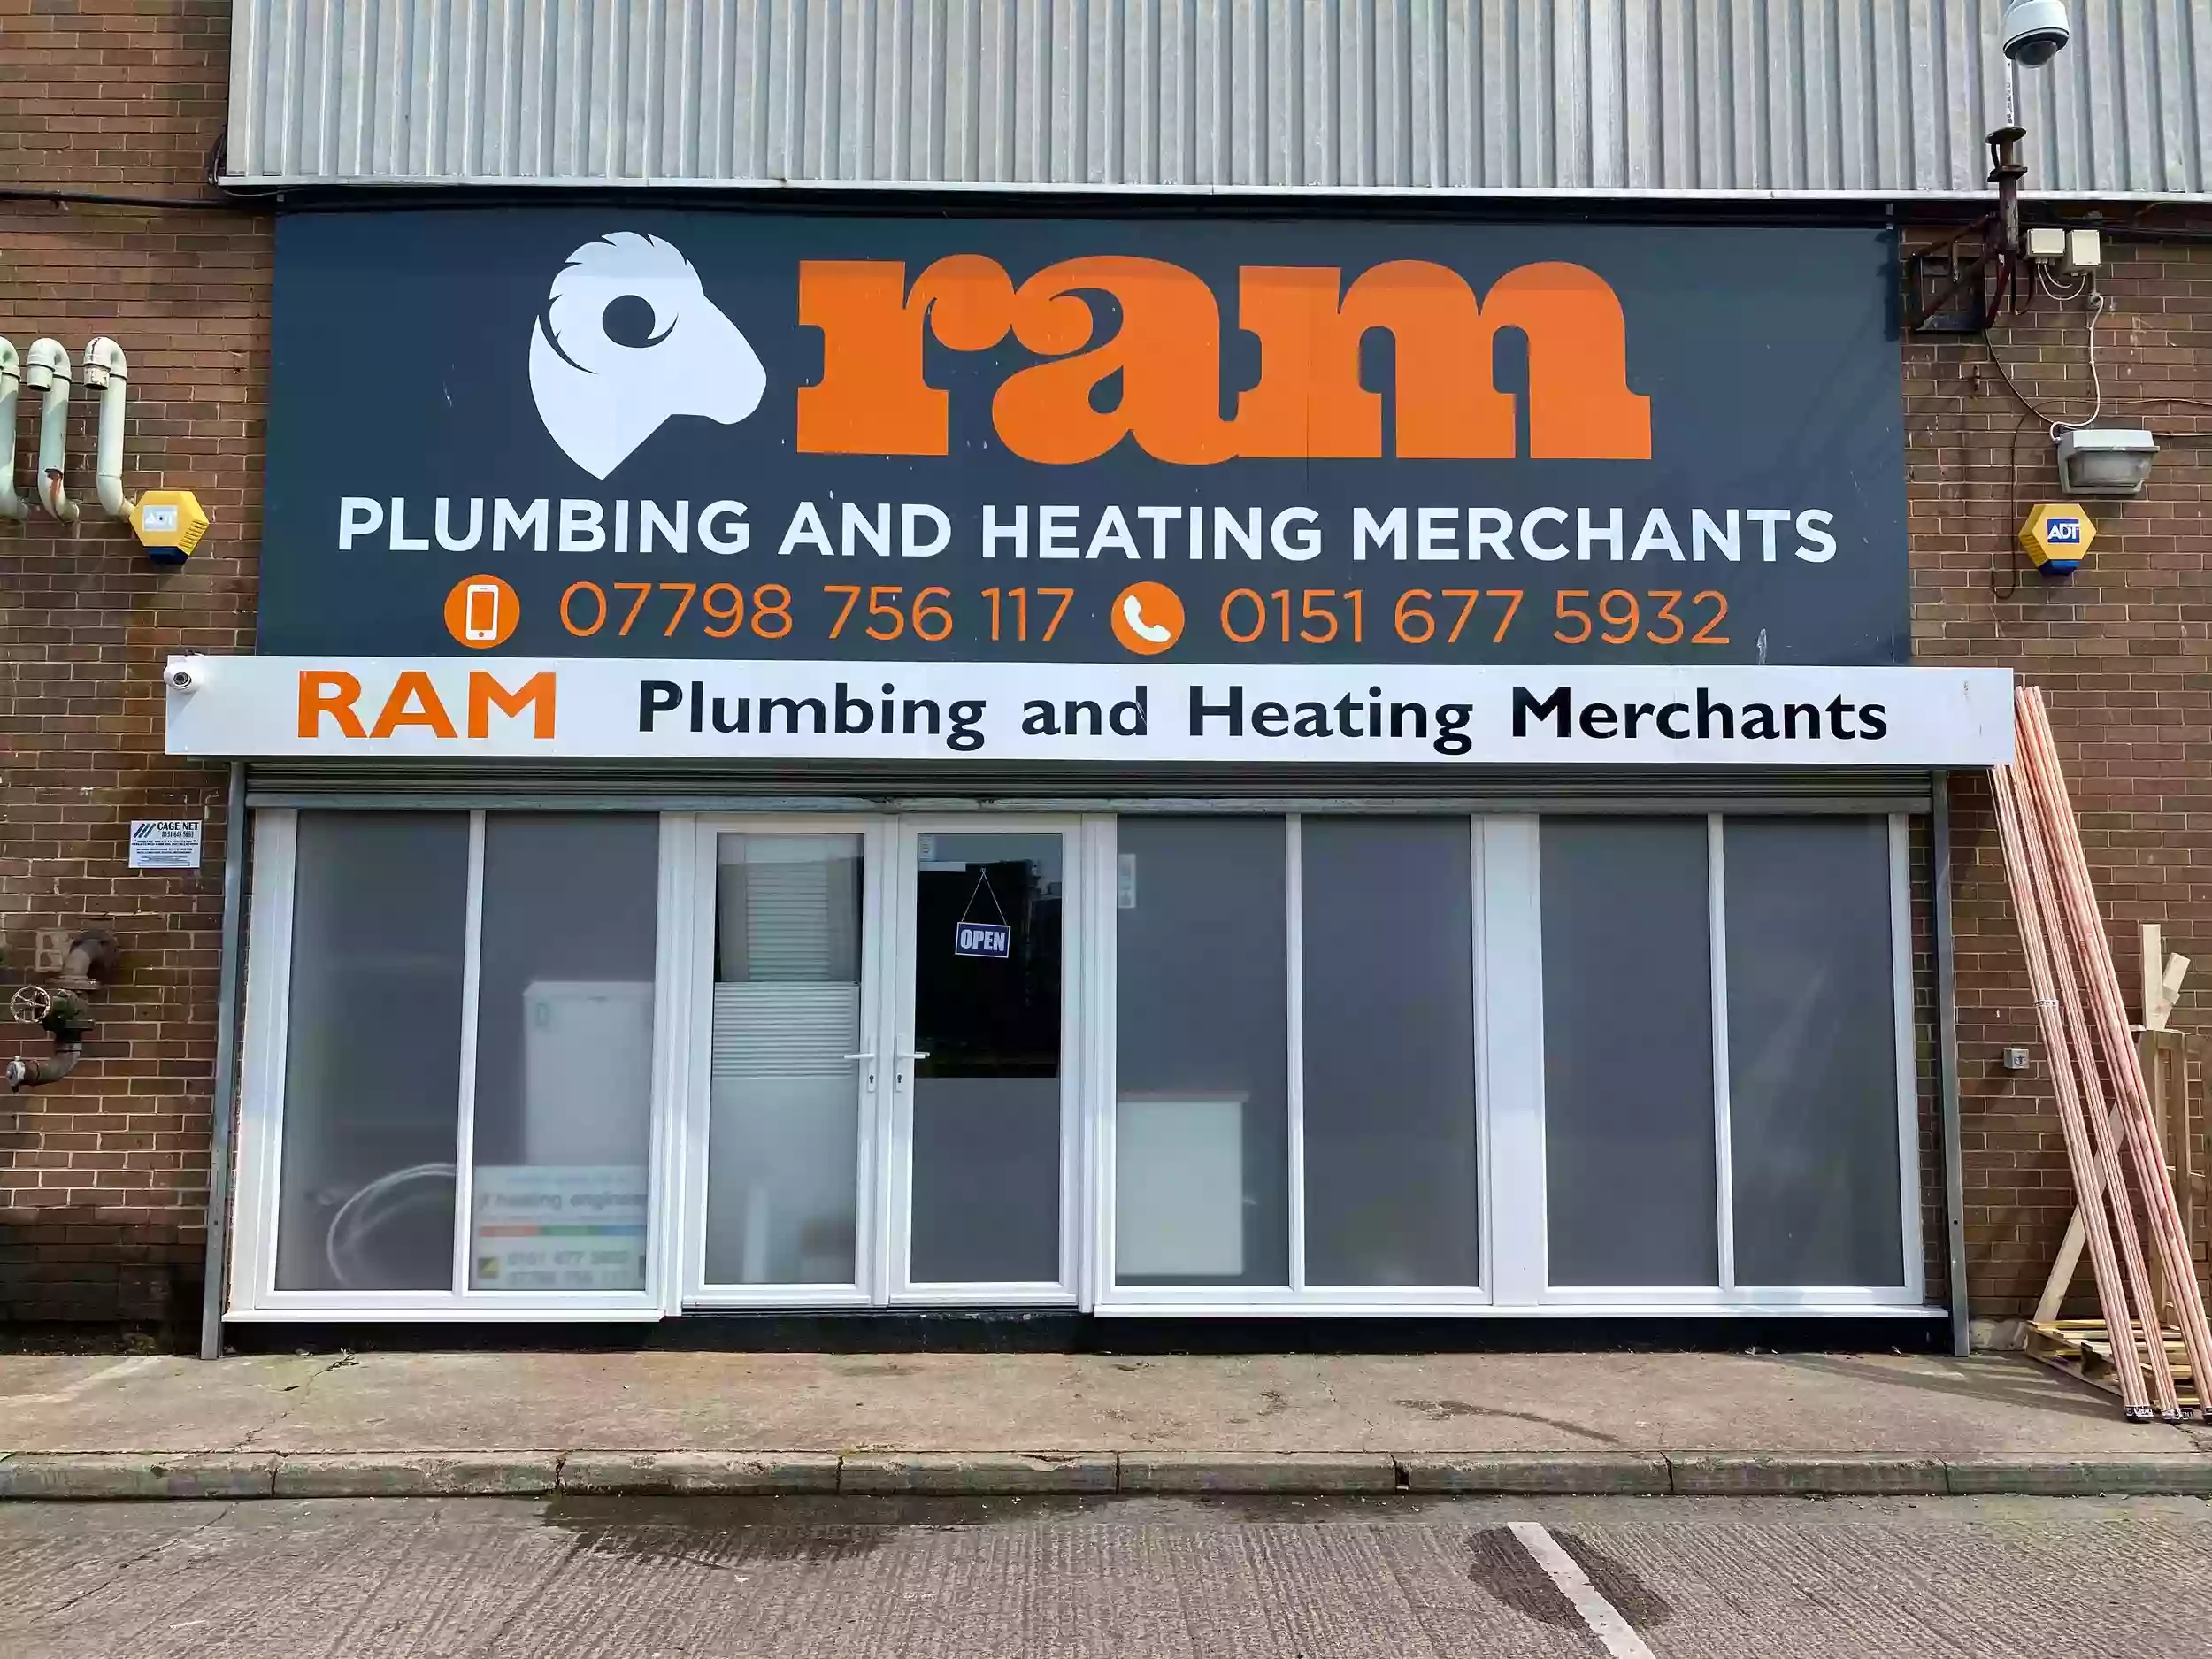 RAM Plumbing and Heating Merchants